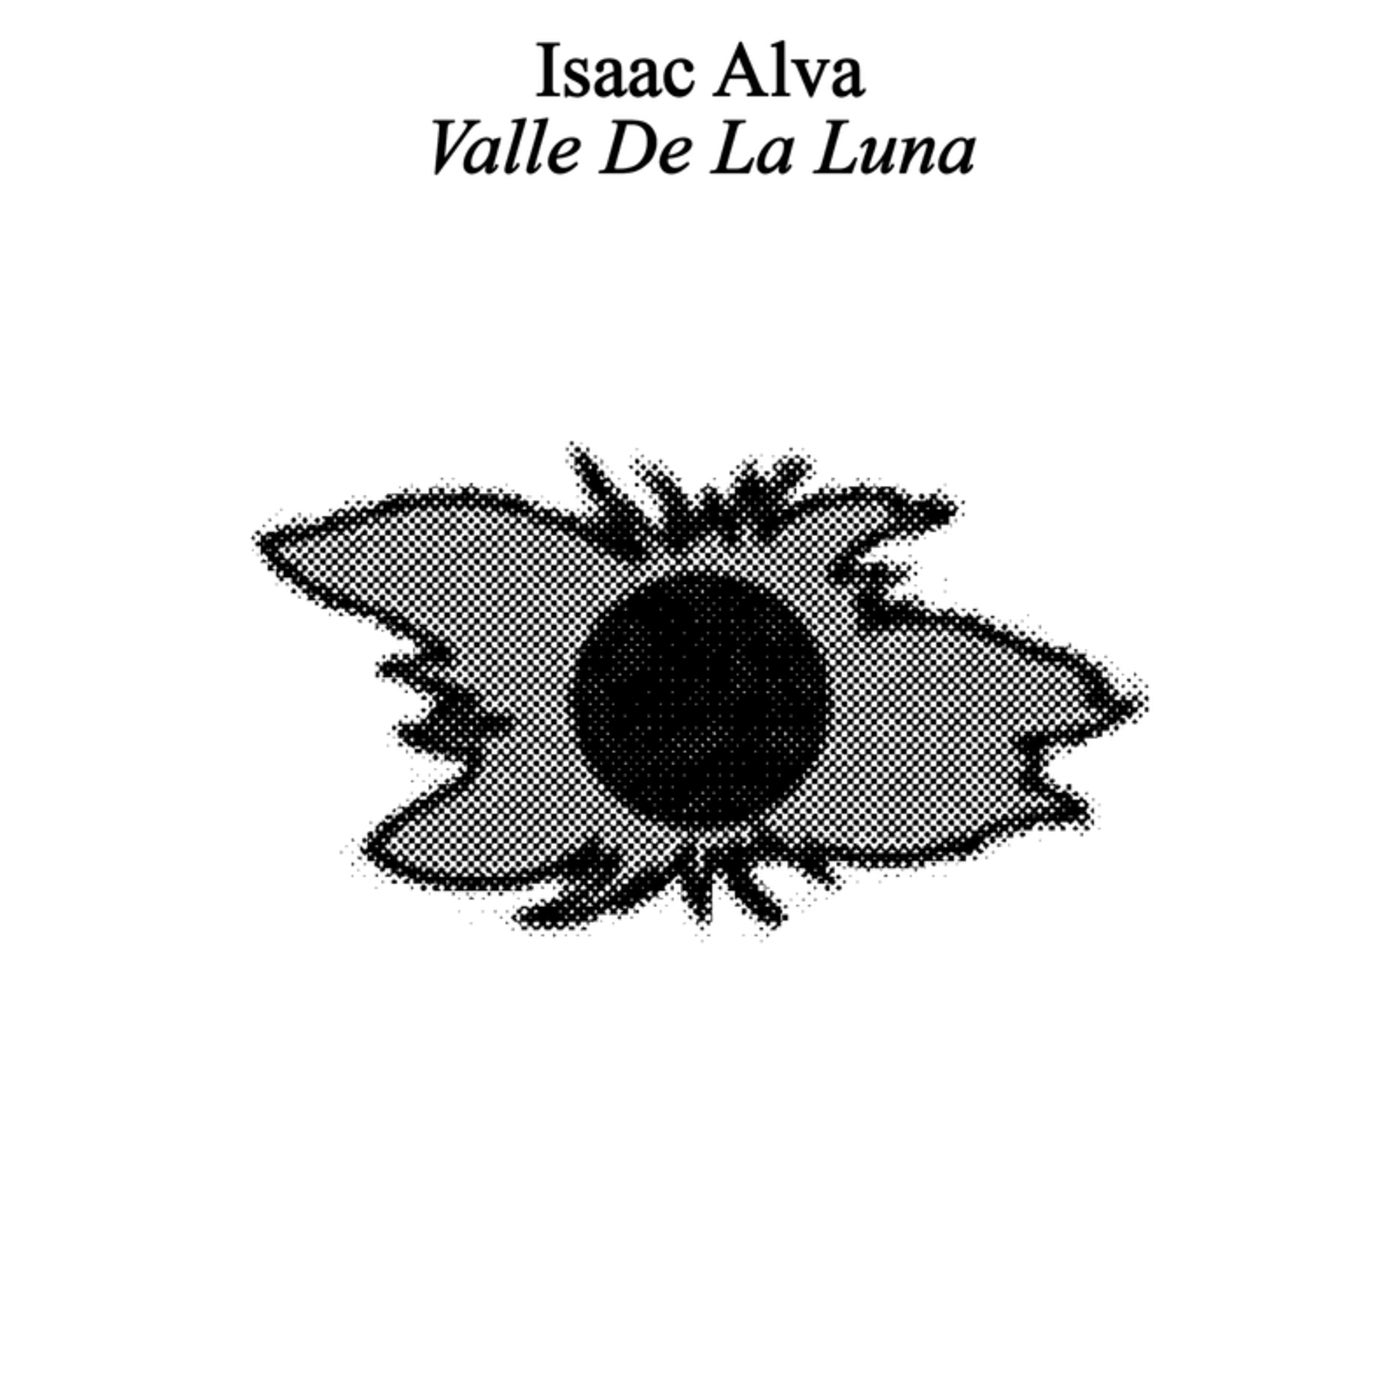 Valle De La Luna